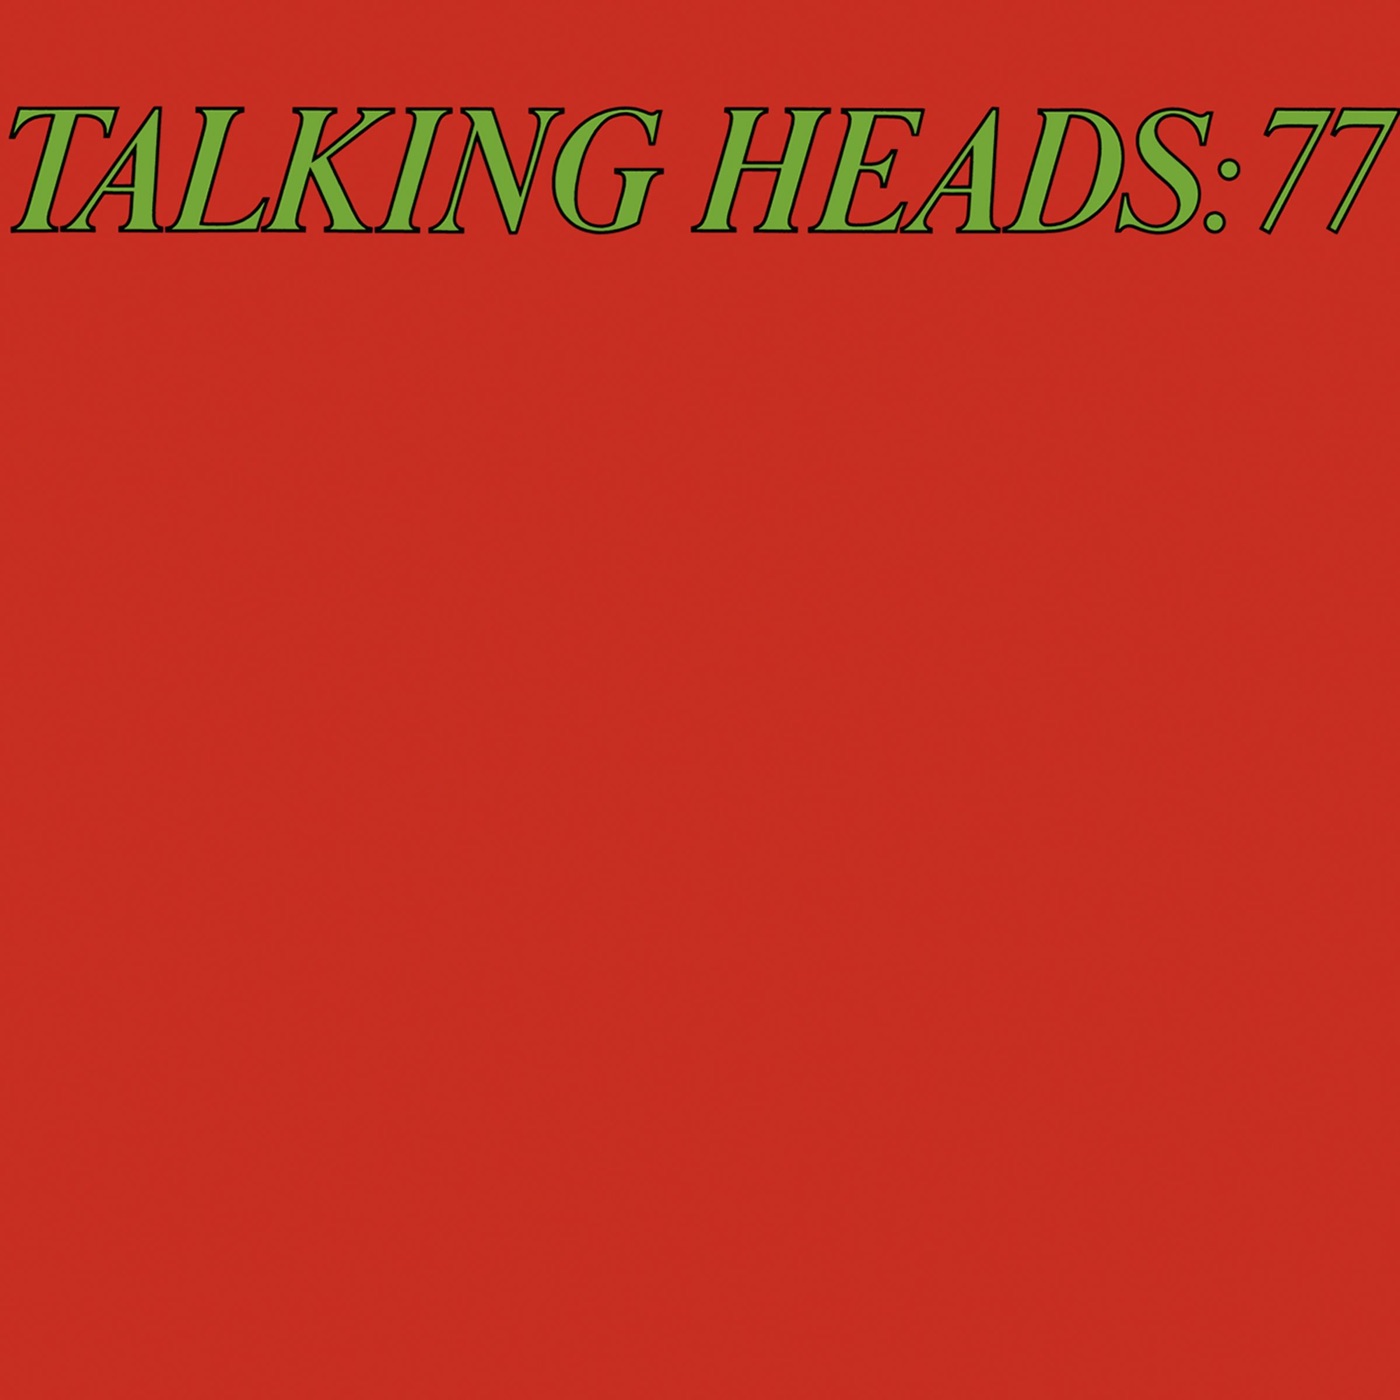 Talking Heads '77 by Talking Heads